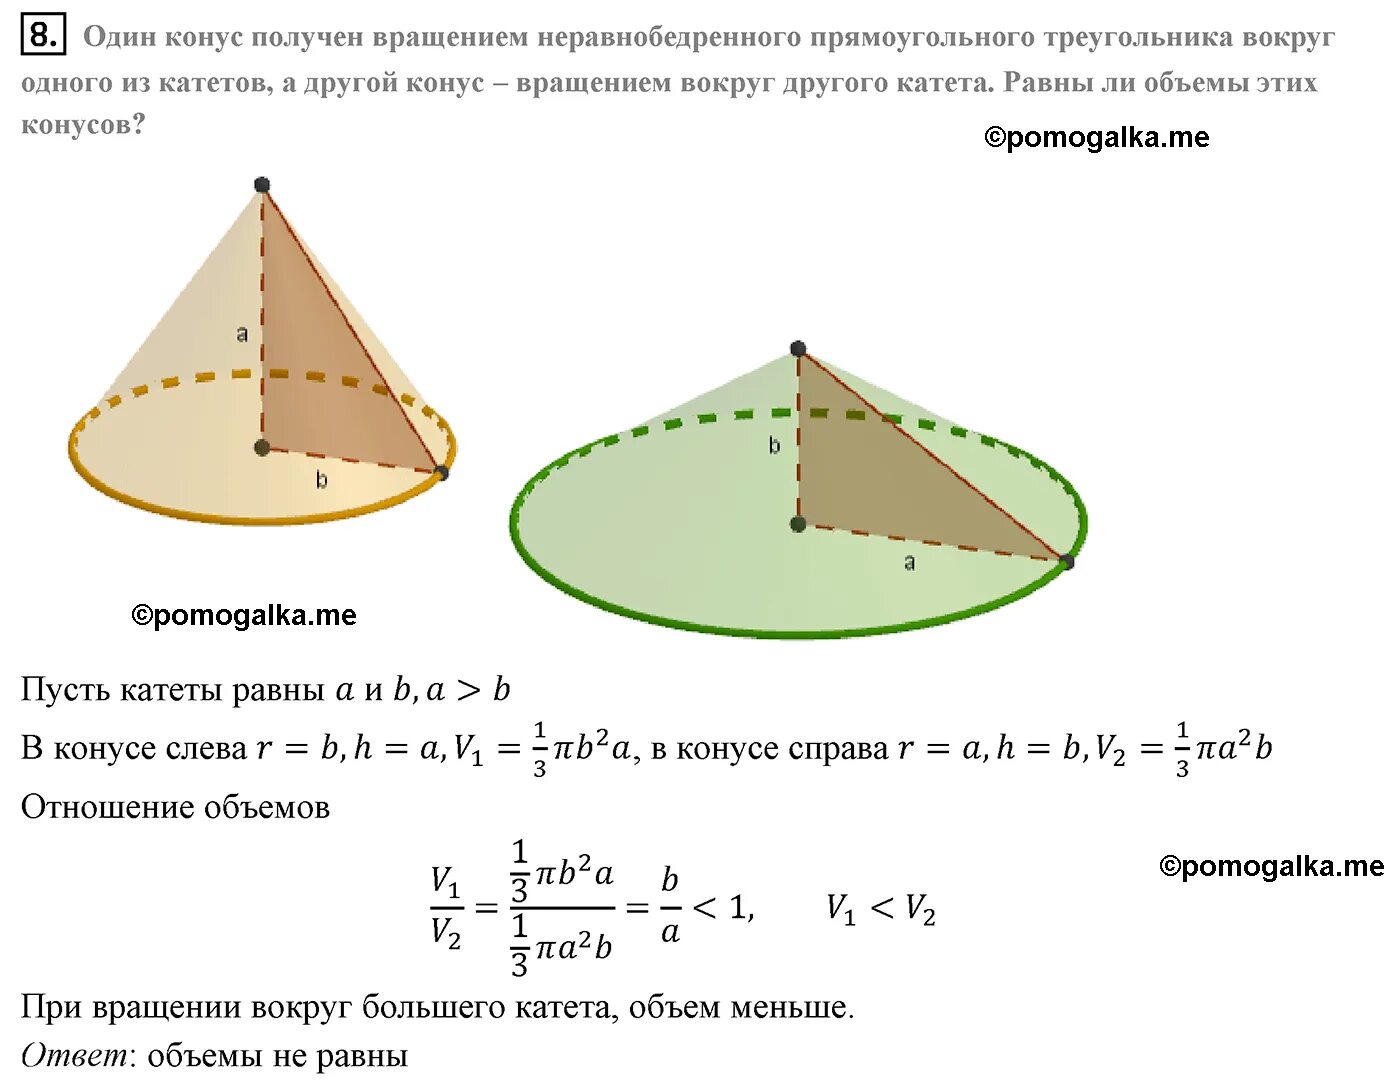 Конус полученный вращением прямоугольного треугольника. Конус получен вращением прямоугольного треугольника с катетами 6. Конус может быть получен вращением. Способы получения конуса.